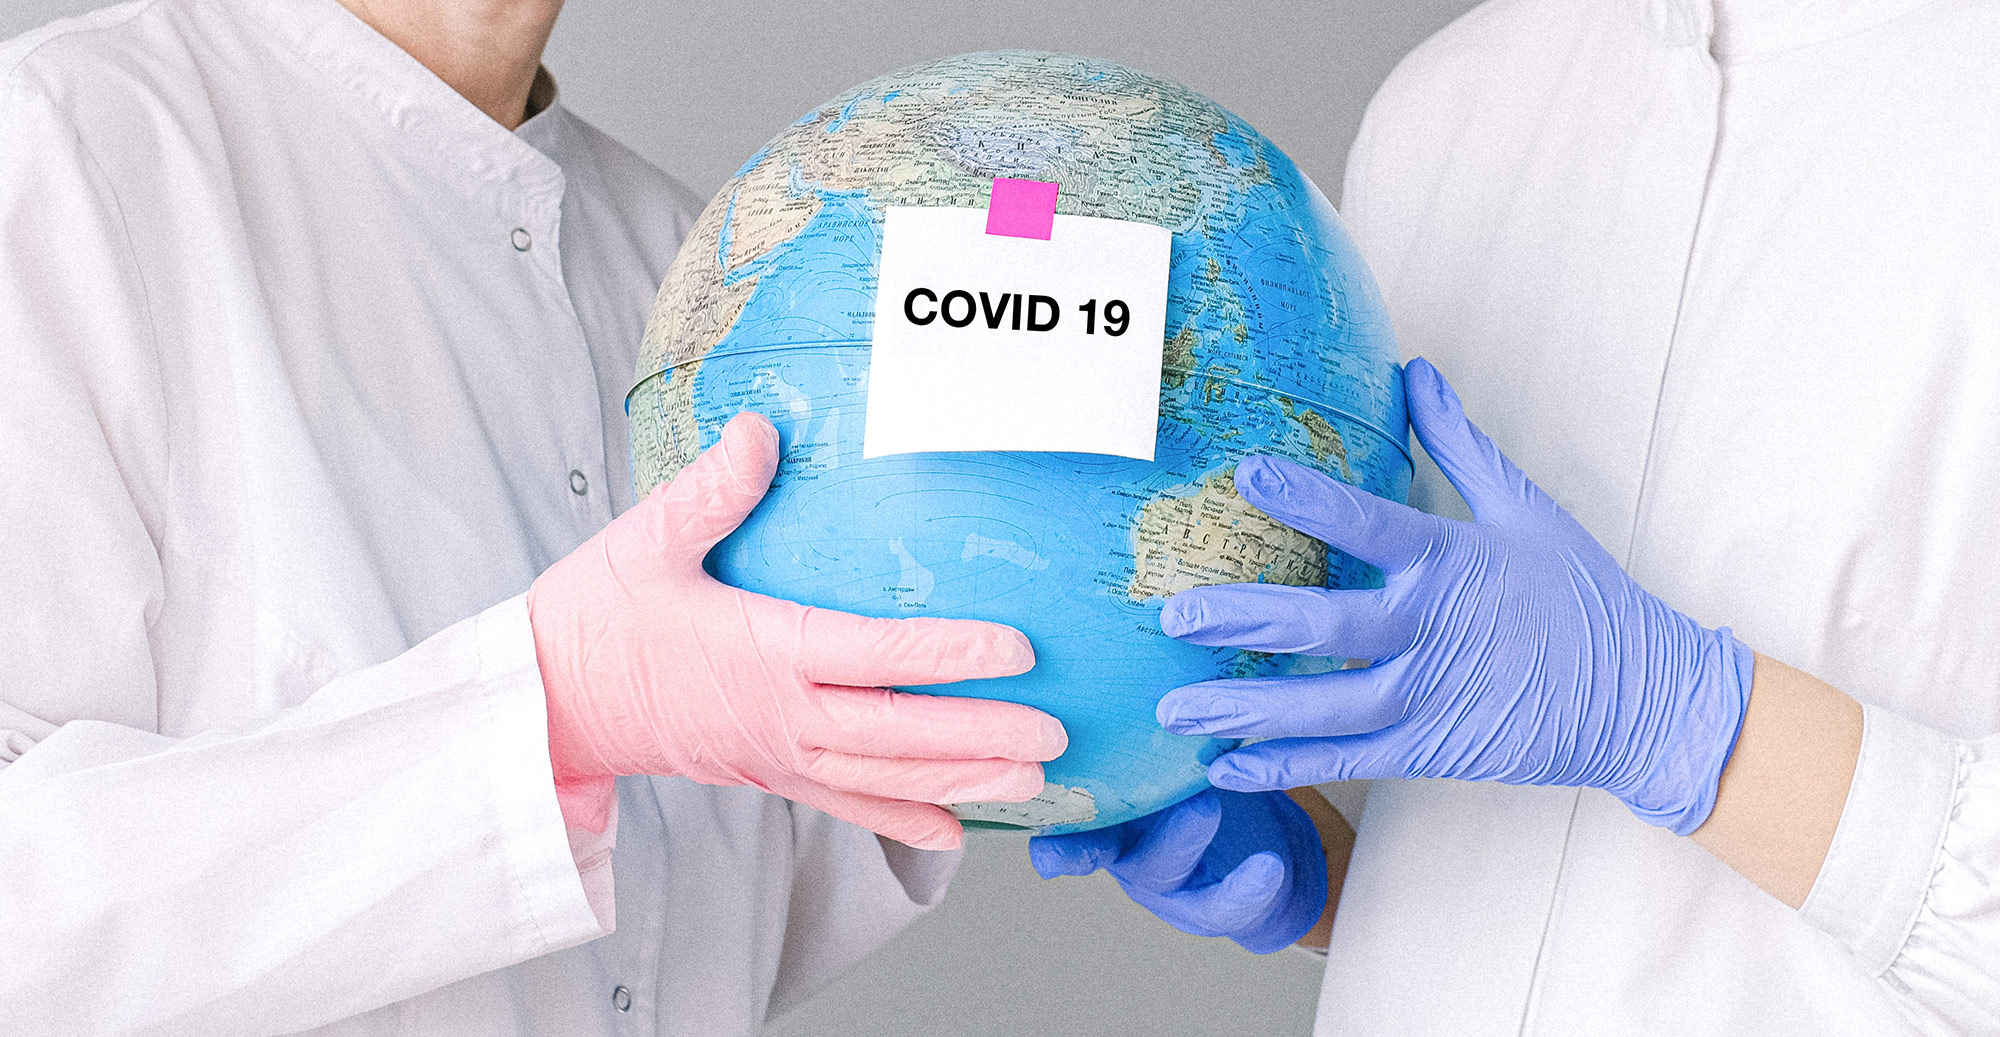 COVID-19 в мире